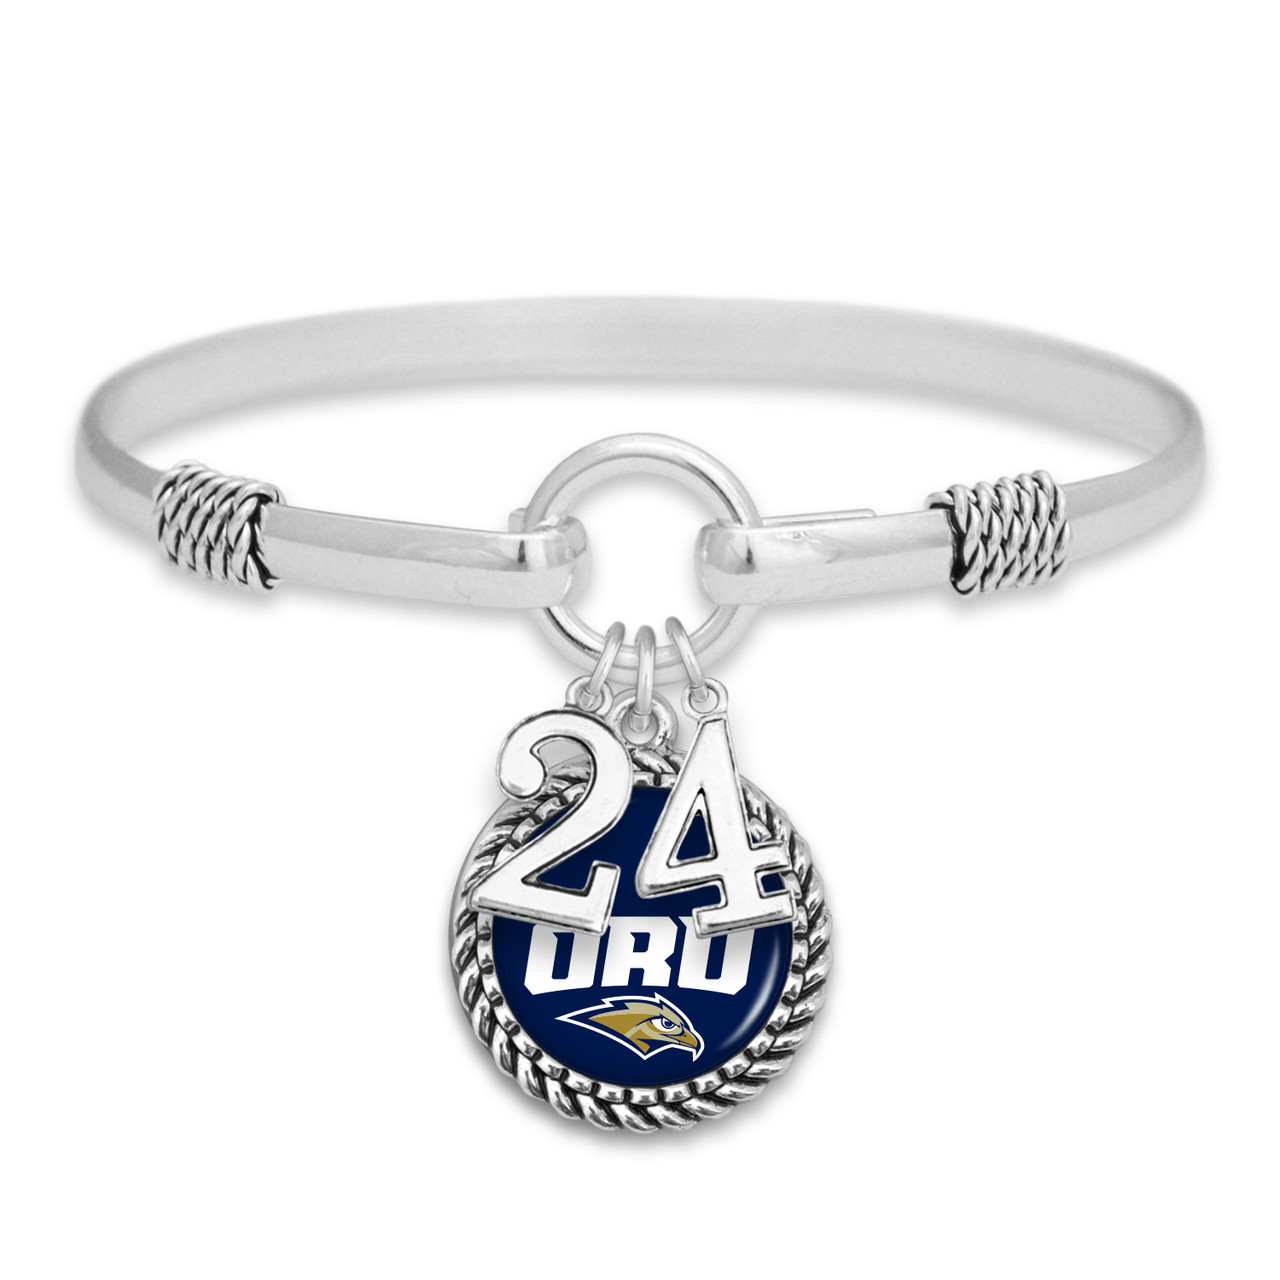 Oral Roberts Golden Eagles - Graduation Year Bracelet